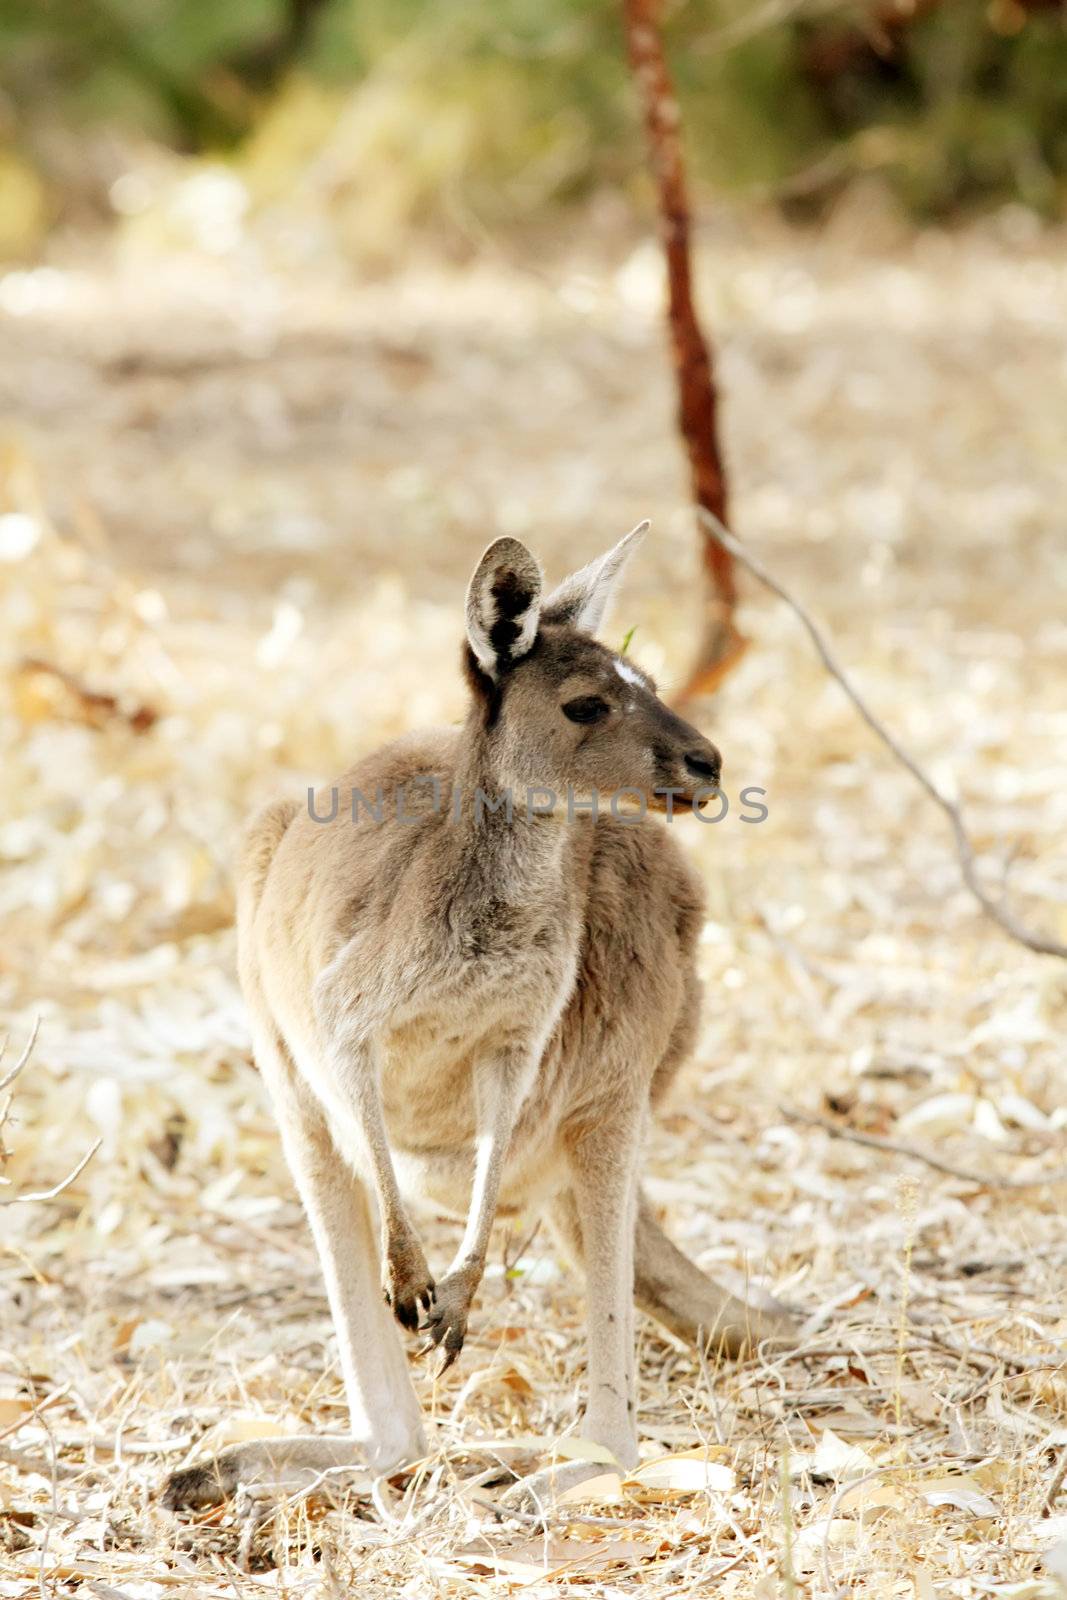 Kangaroo by kentoh